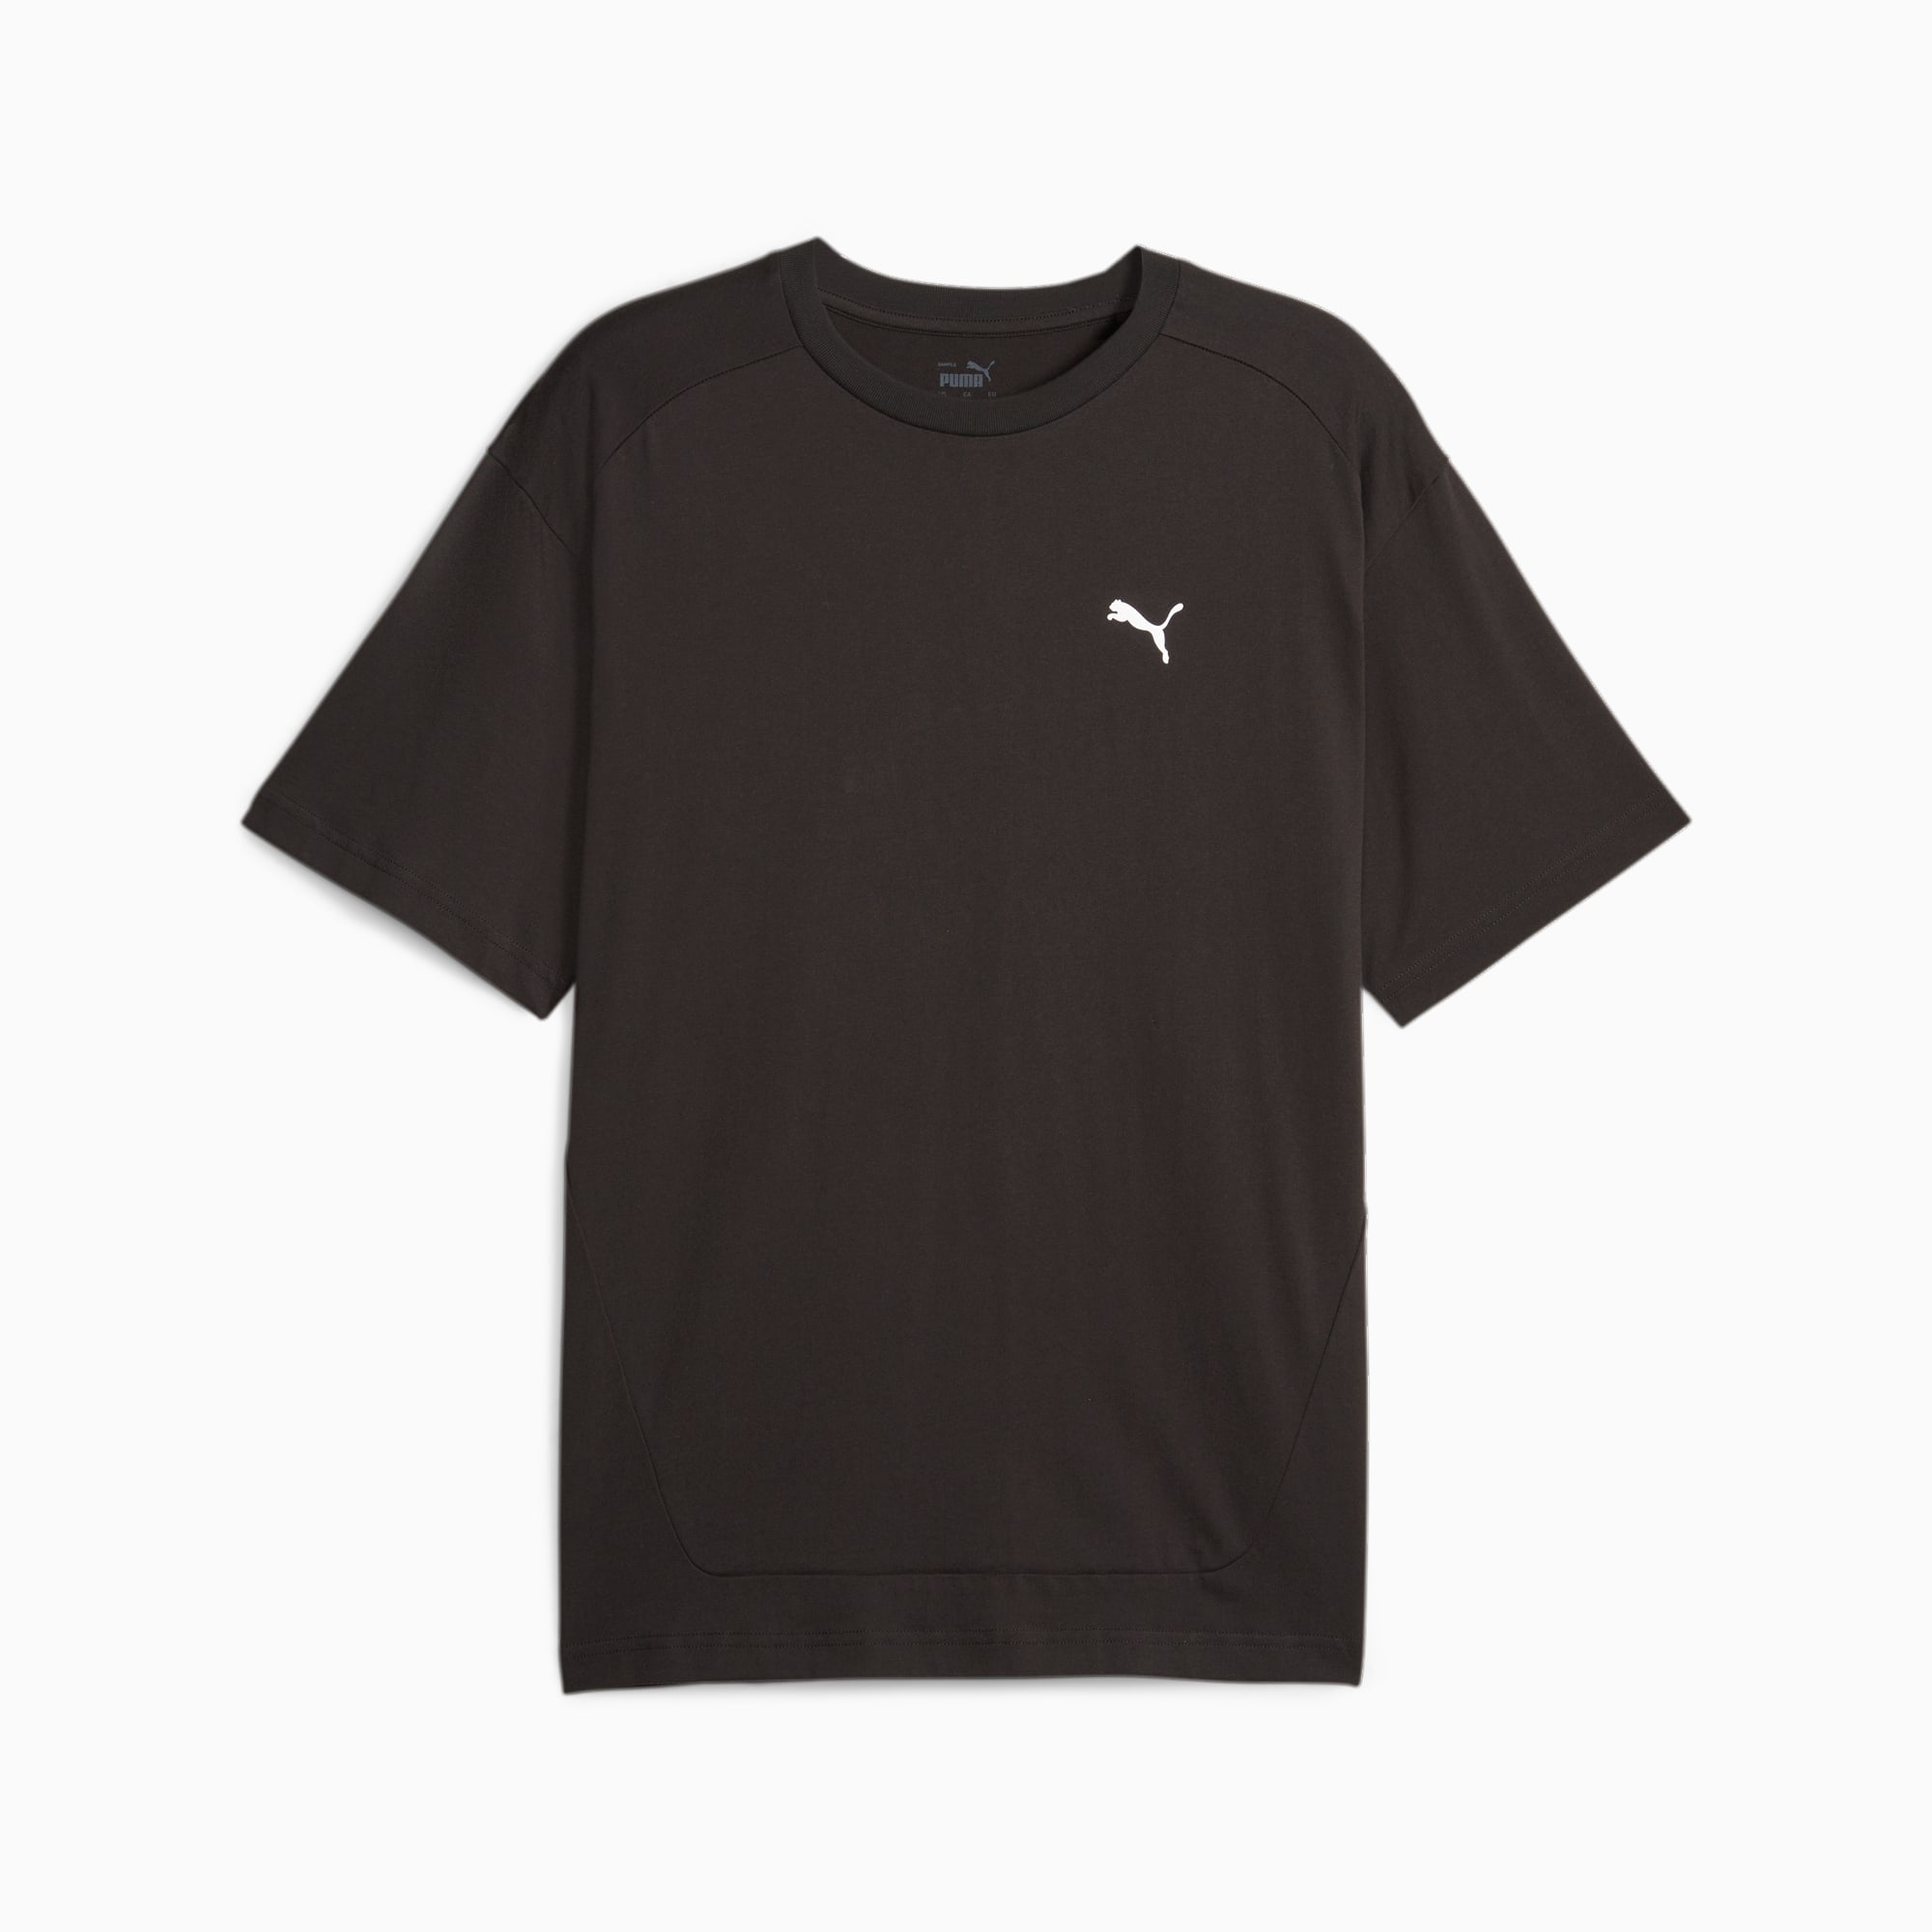 PUMA Rad/Cal Men's T-Shirt, Black